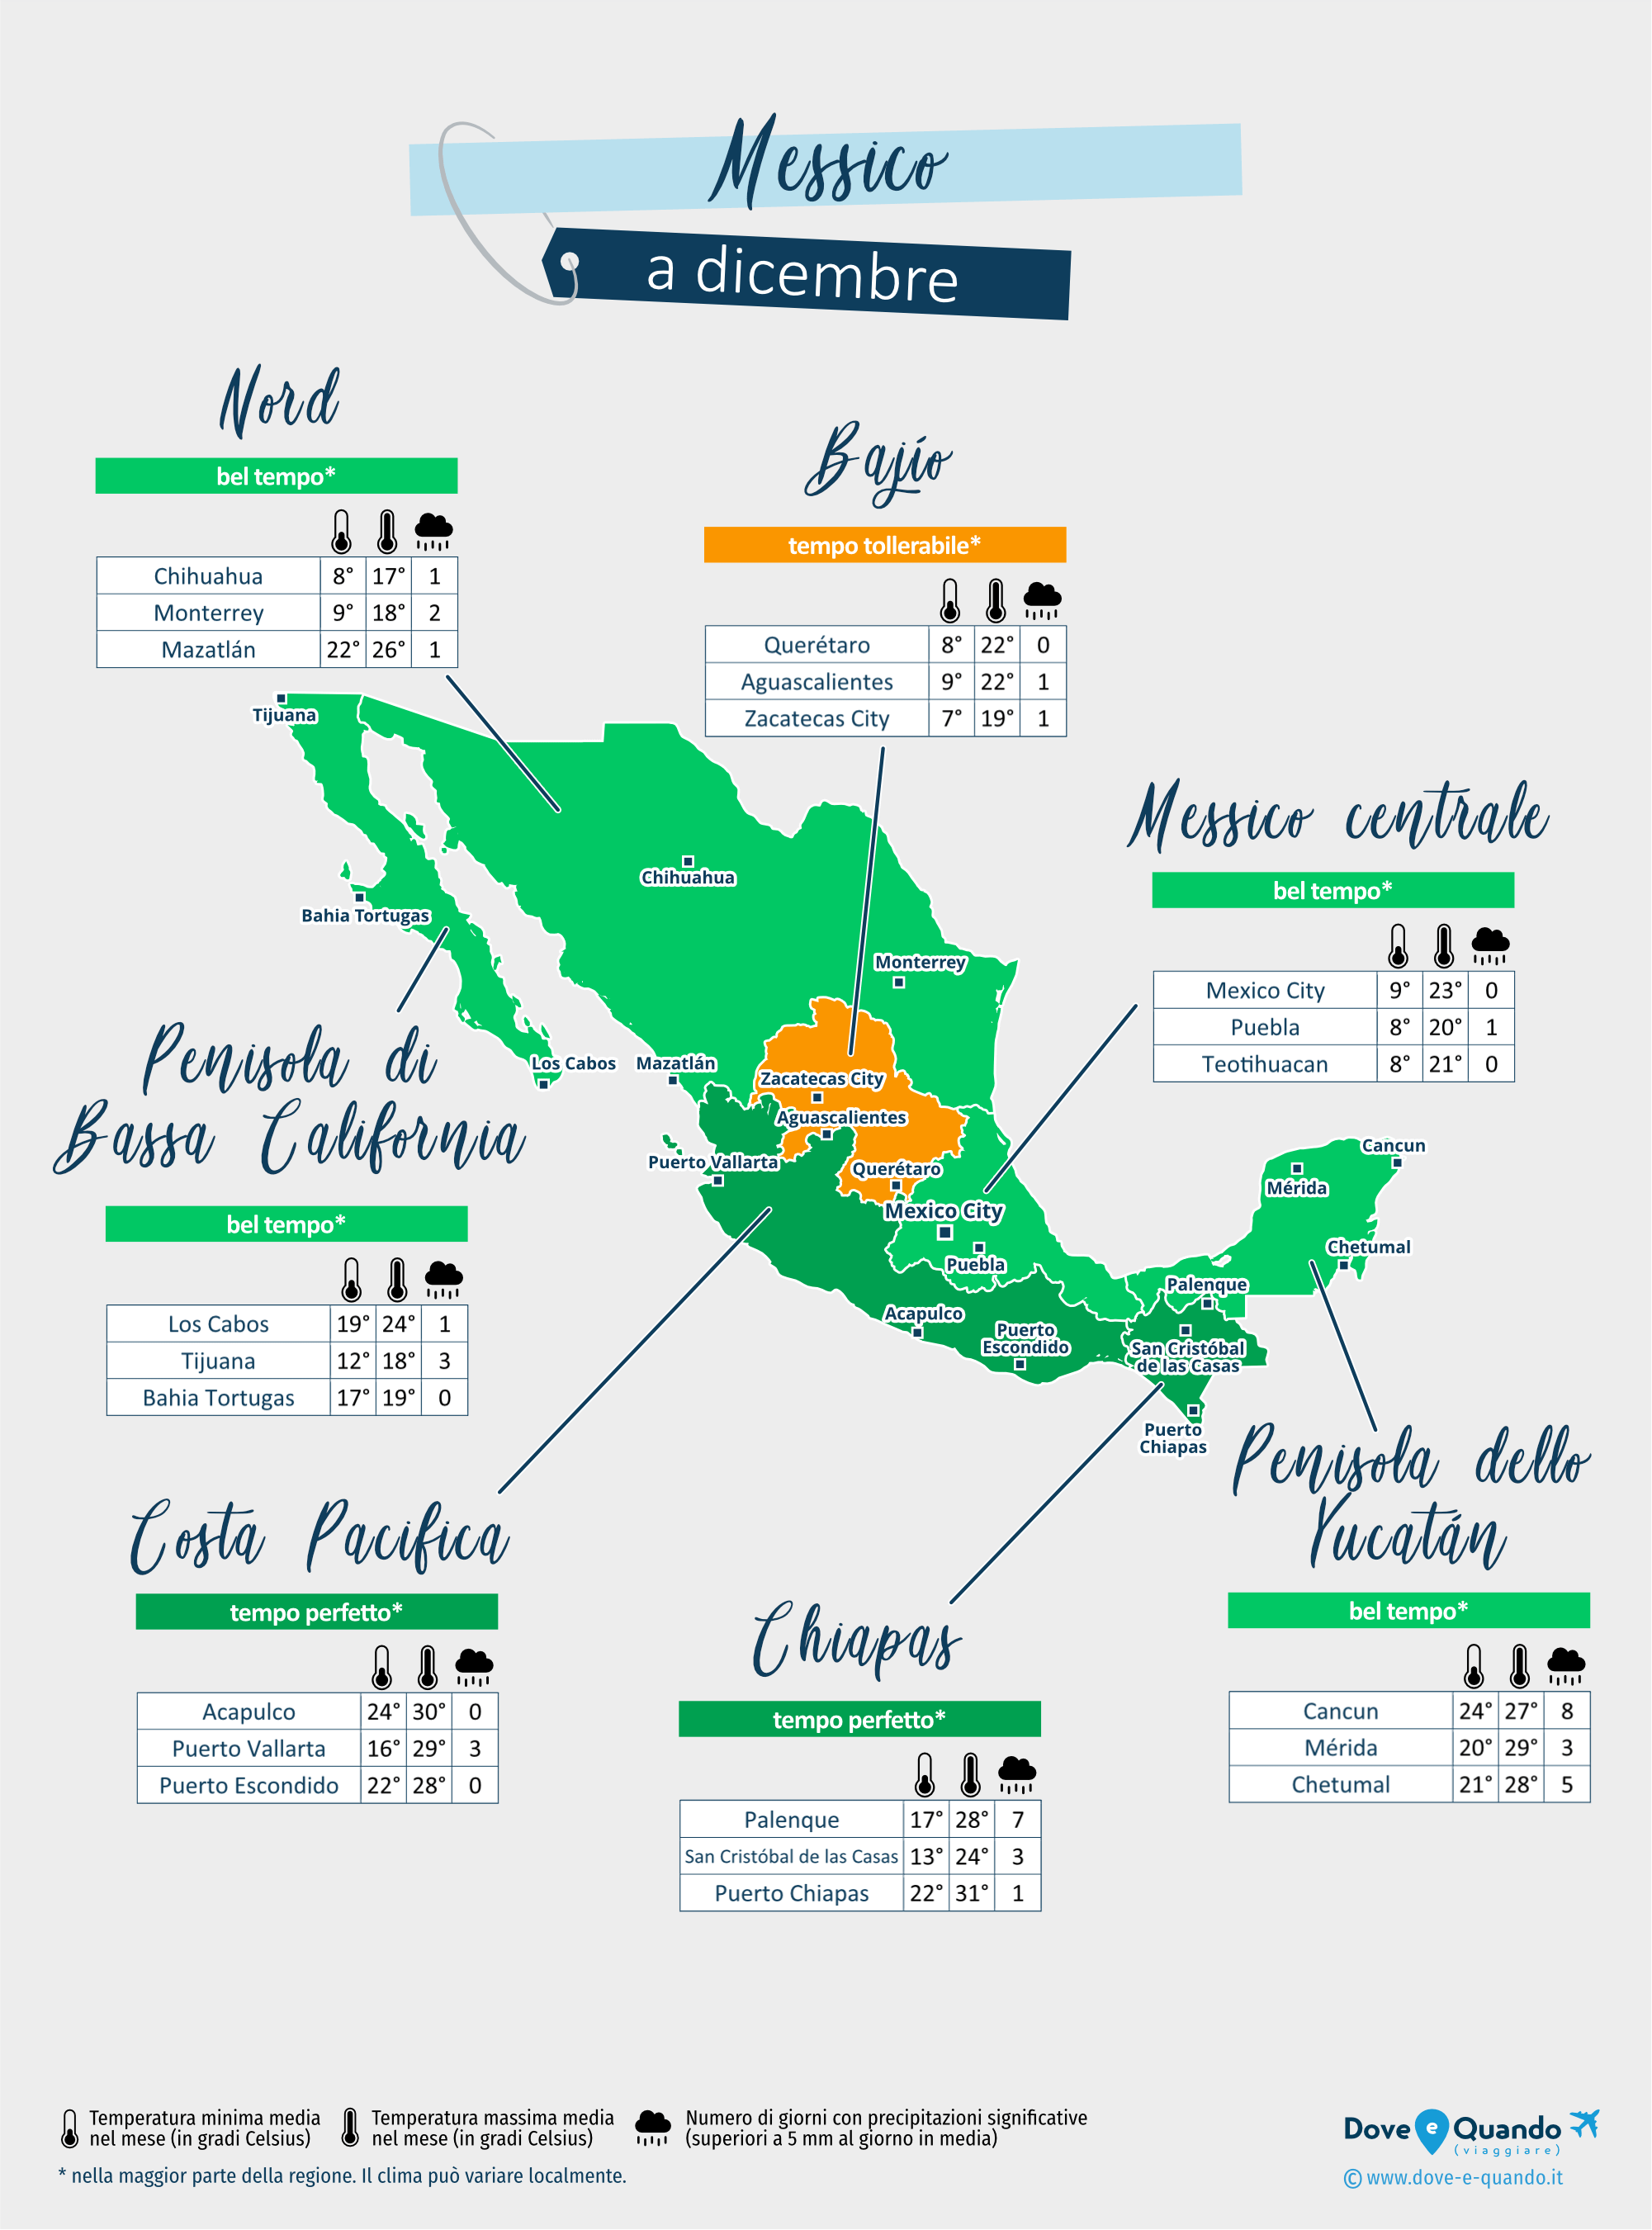 Messico: mappa del meteo a dicembre nelle diverse regioni